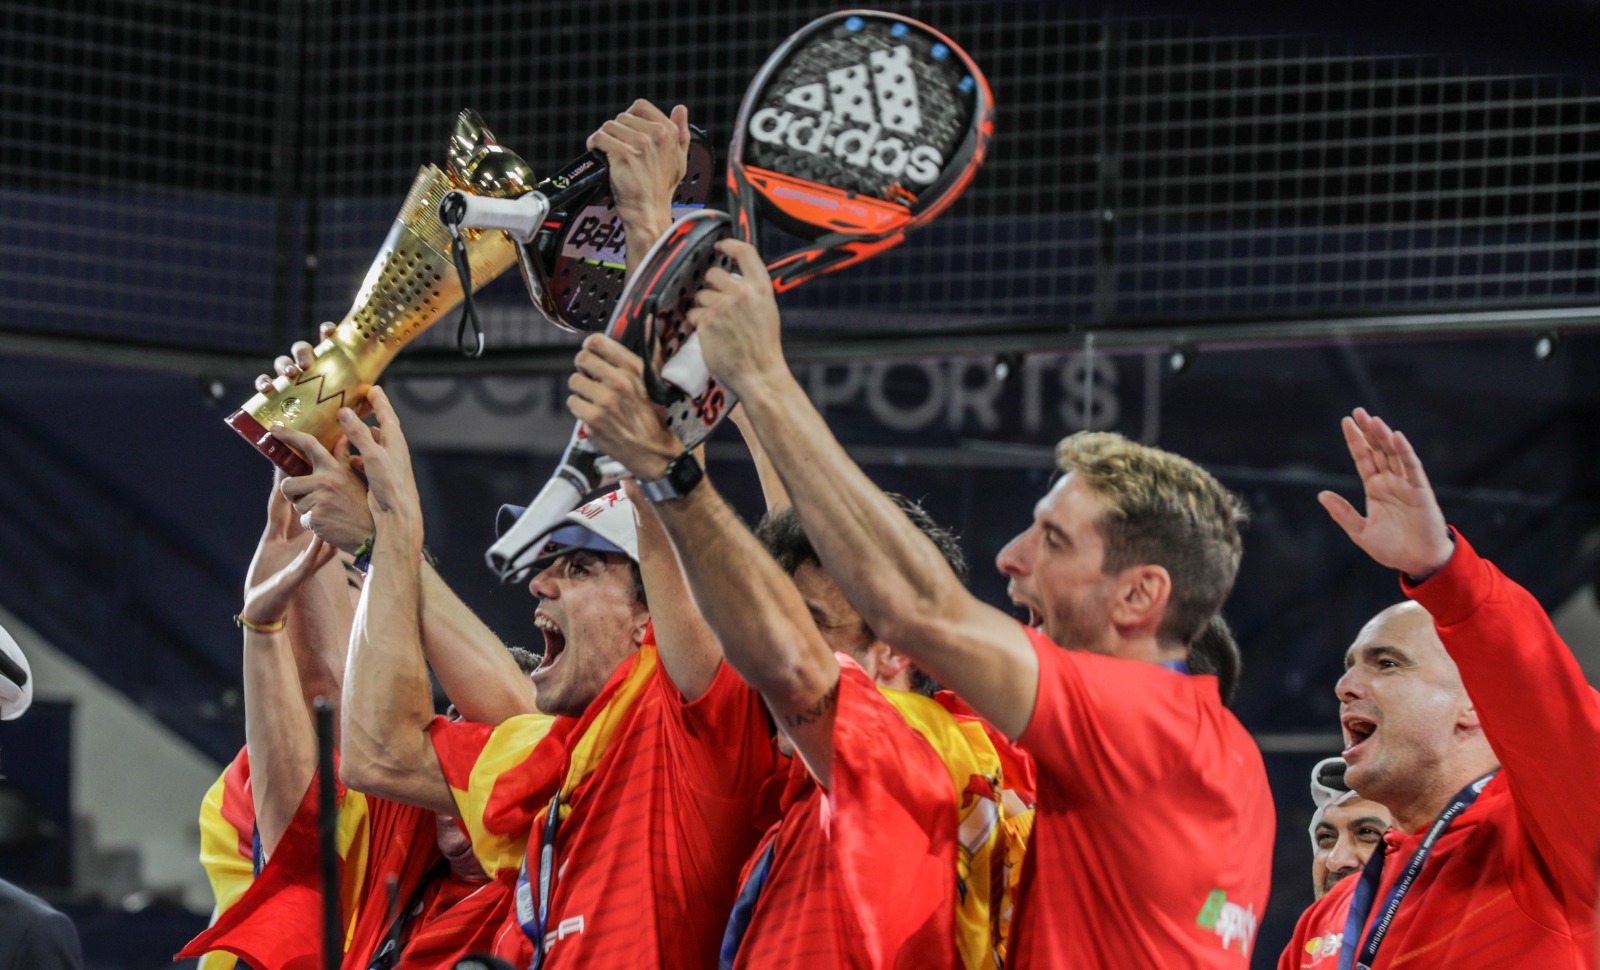 Campioni del mondo di vittoria gioia spagnola padel qatar 2020